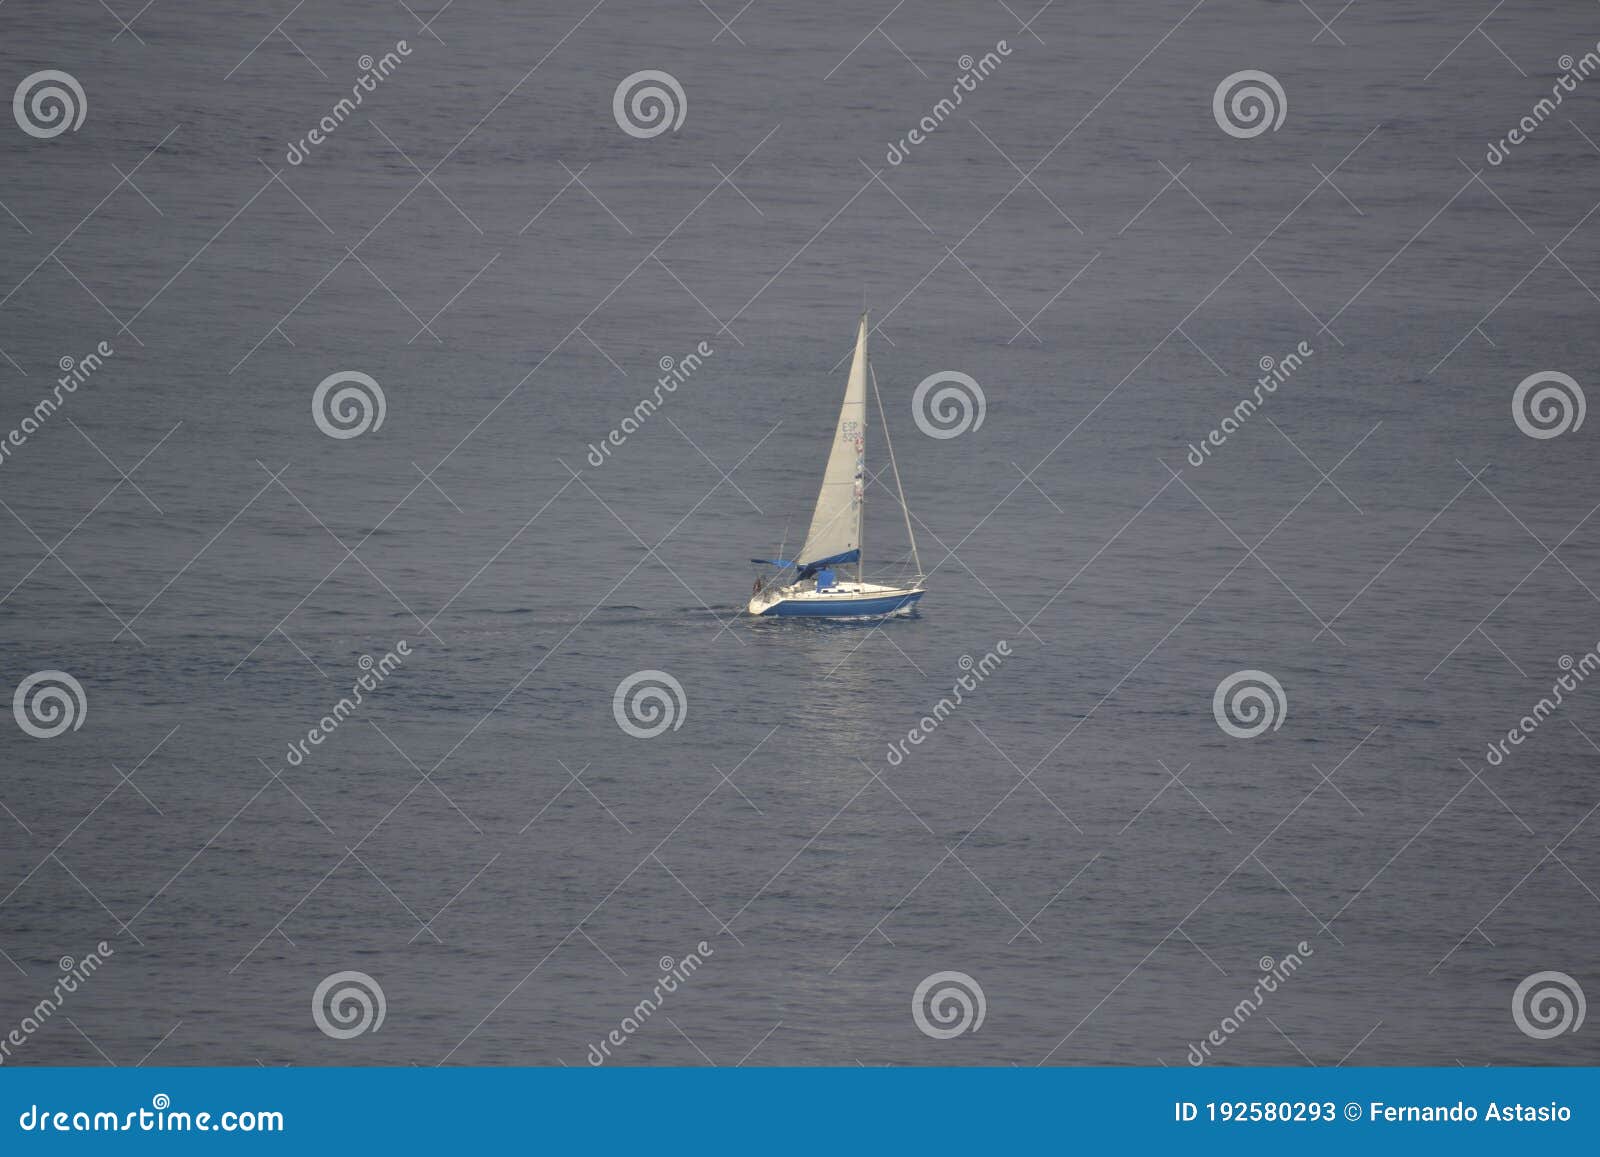 sailing boat sailing through the cantabrian sea